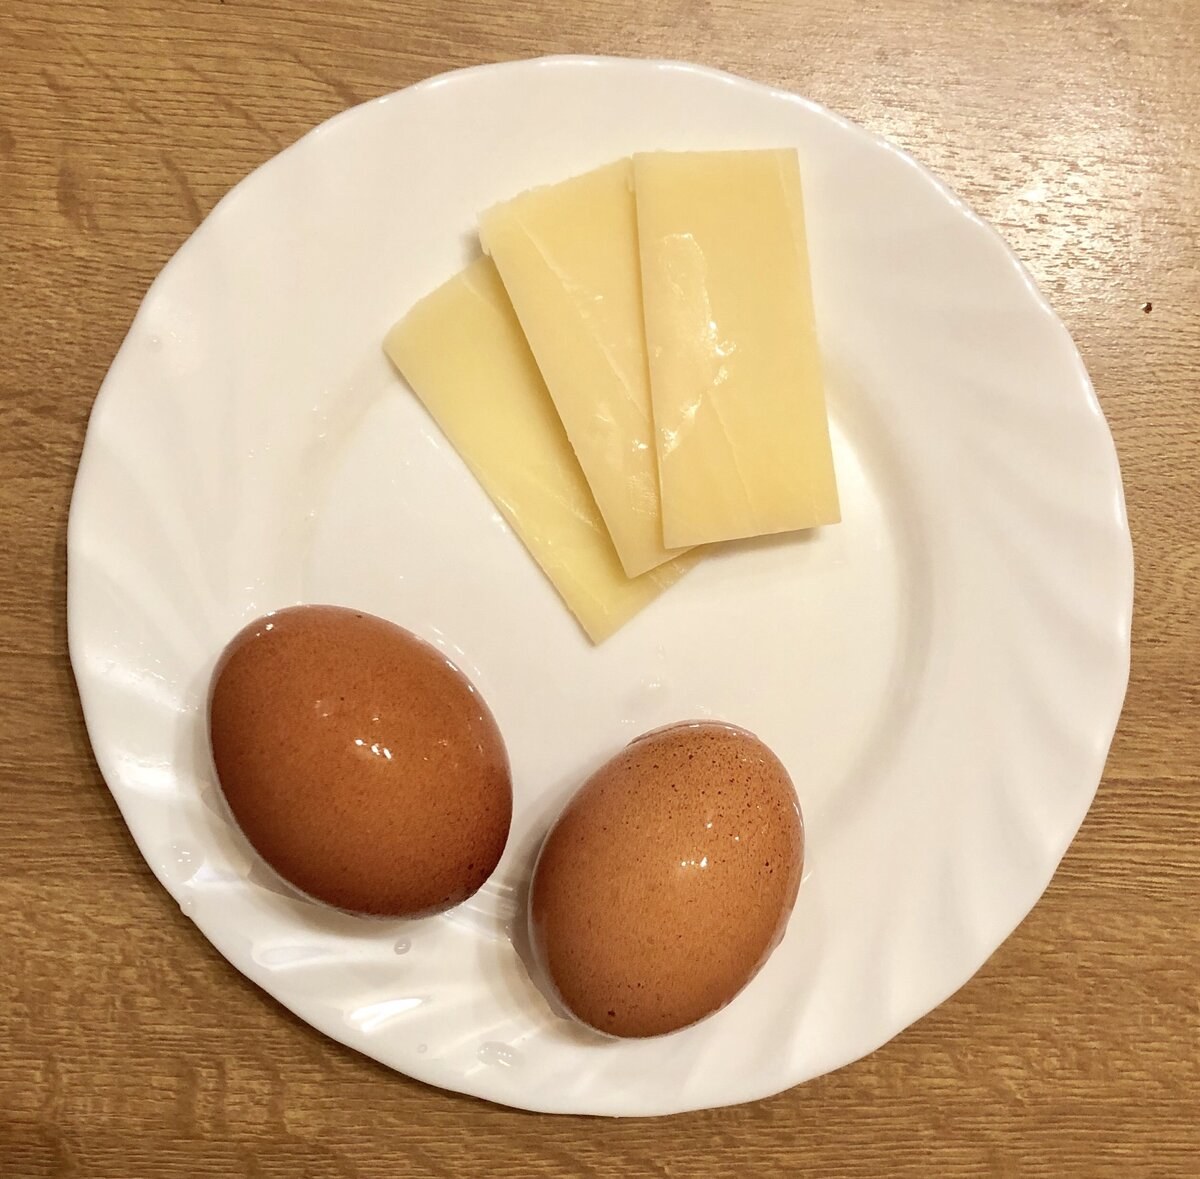 Кусок сыра сколько грамм